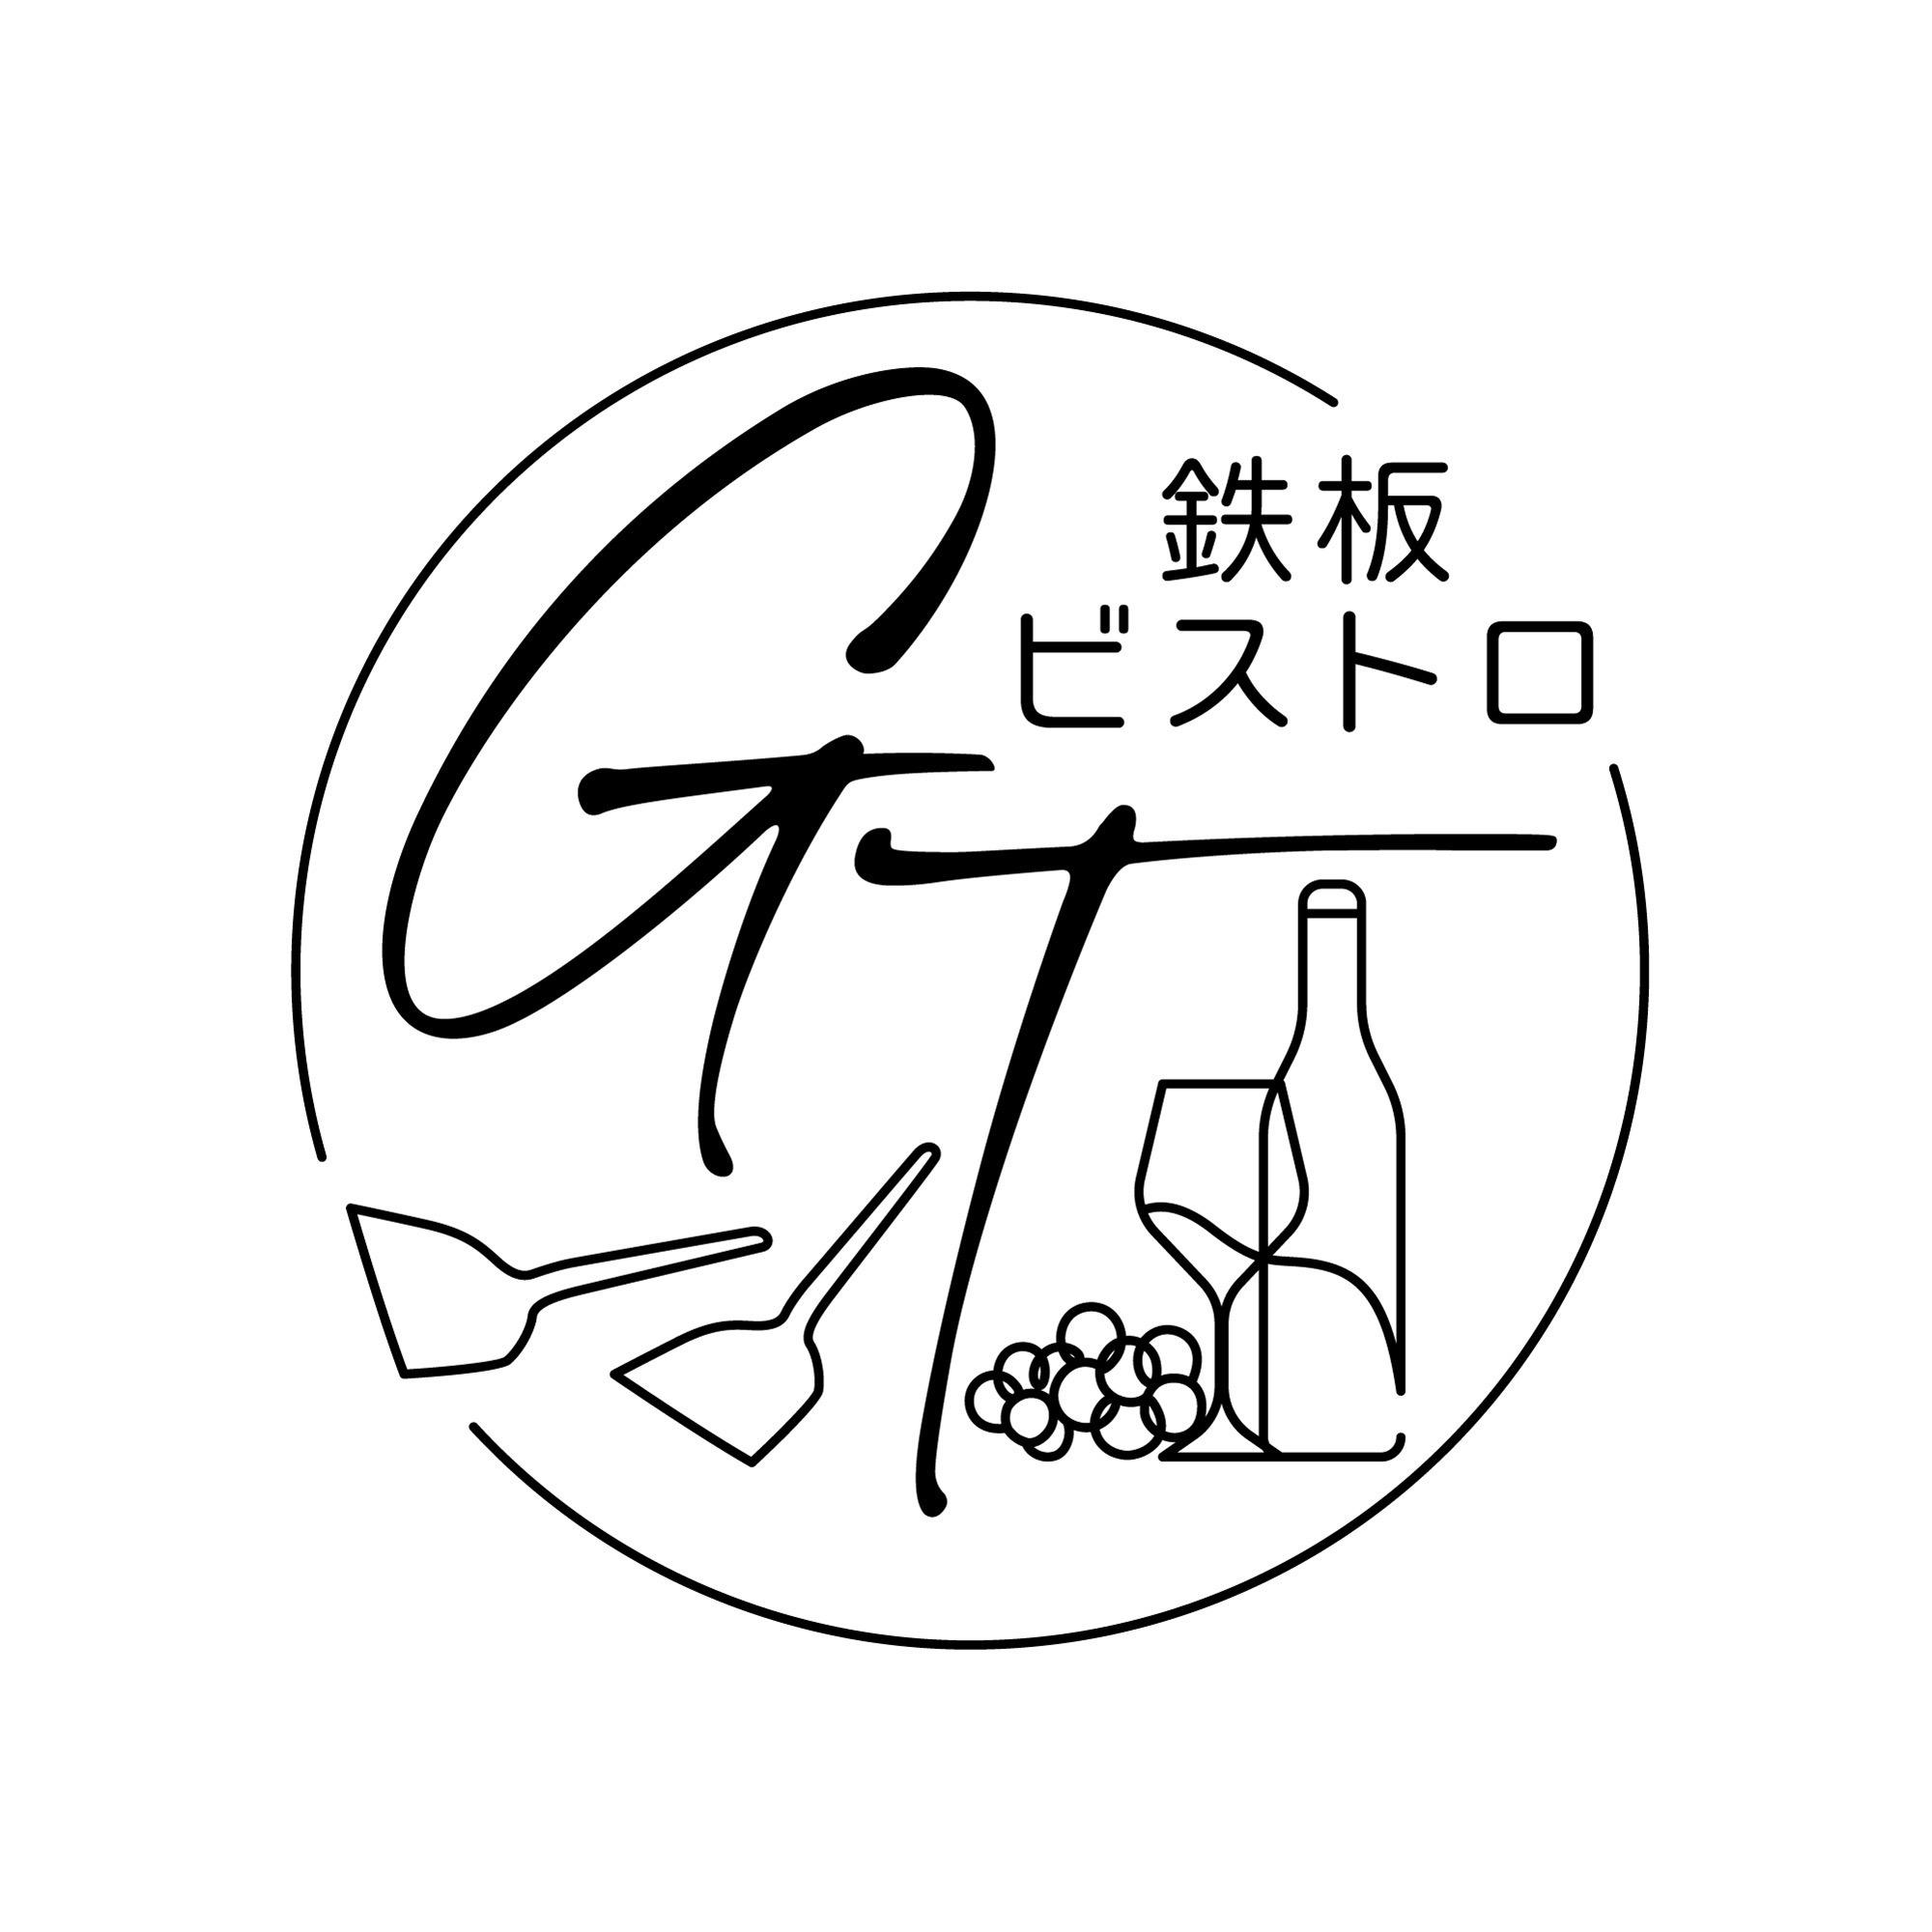 鉄板ビストロGT - Teppanyaki Restaurant - 大阪市 - 06-6125-5553 Japan | ShowMeLocal.com